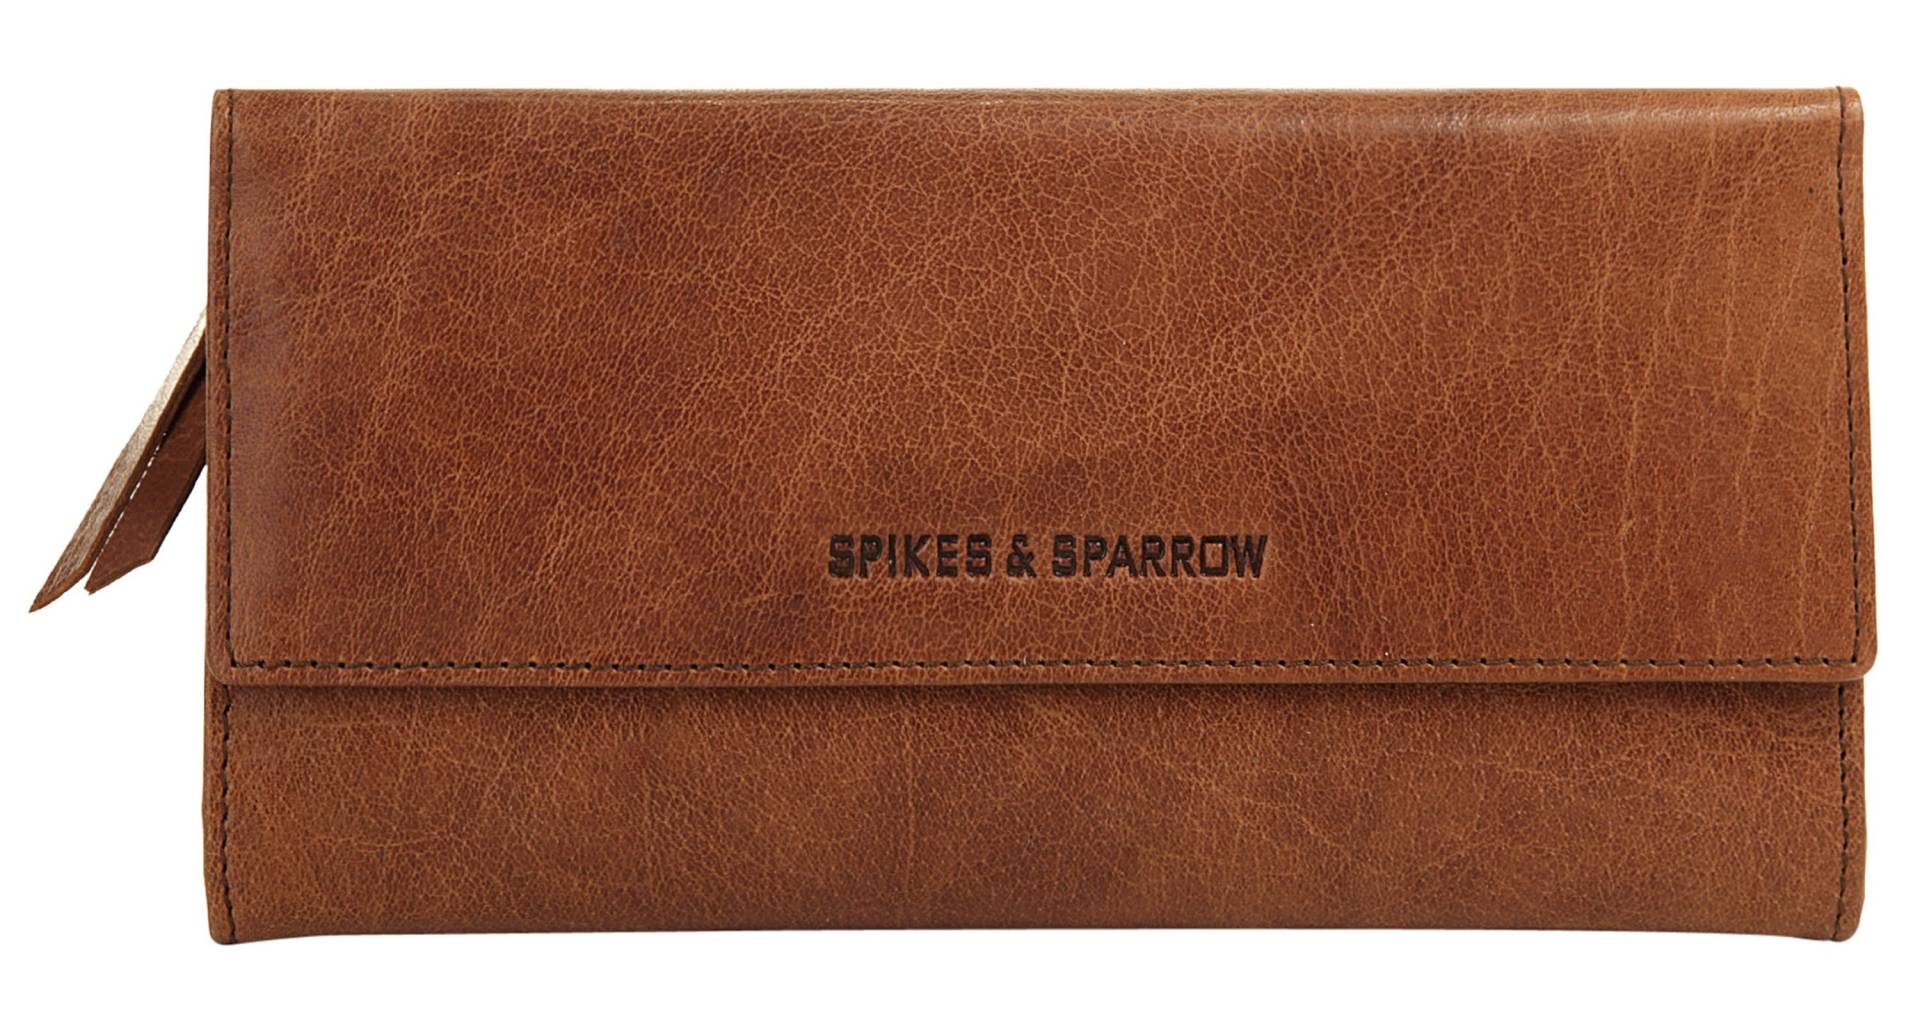 Spikes & Sparrow Geldbörse von Spikes & Sparrow